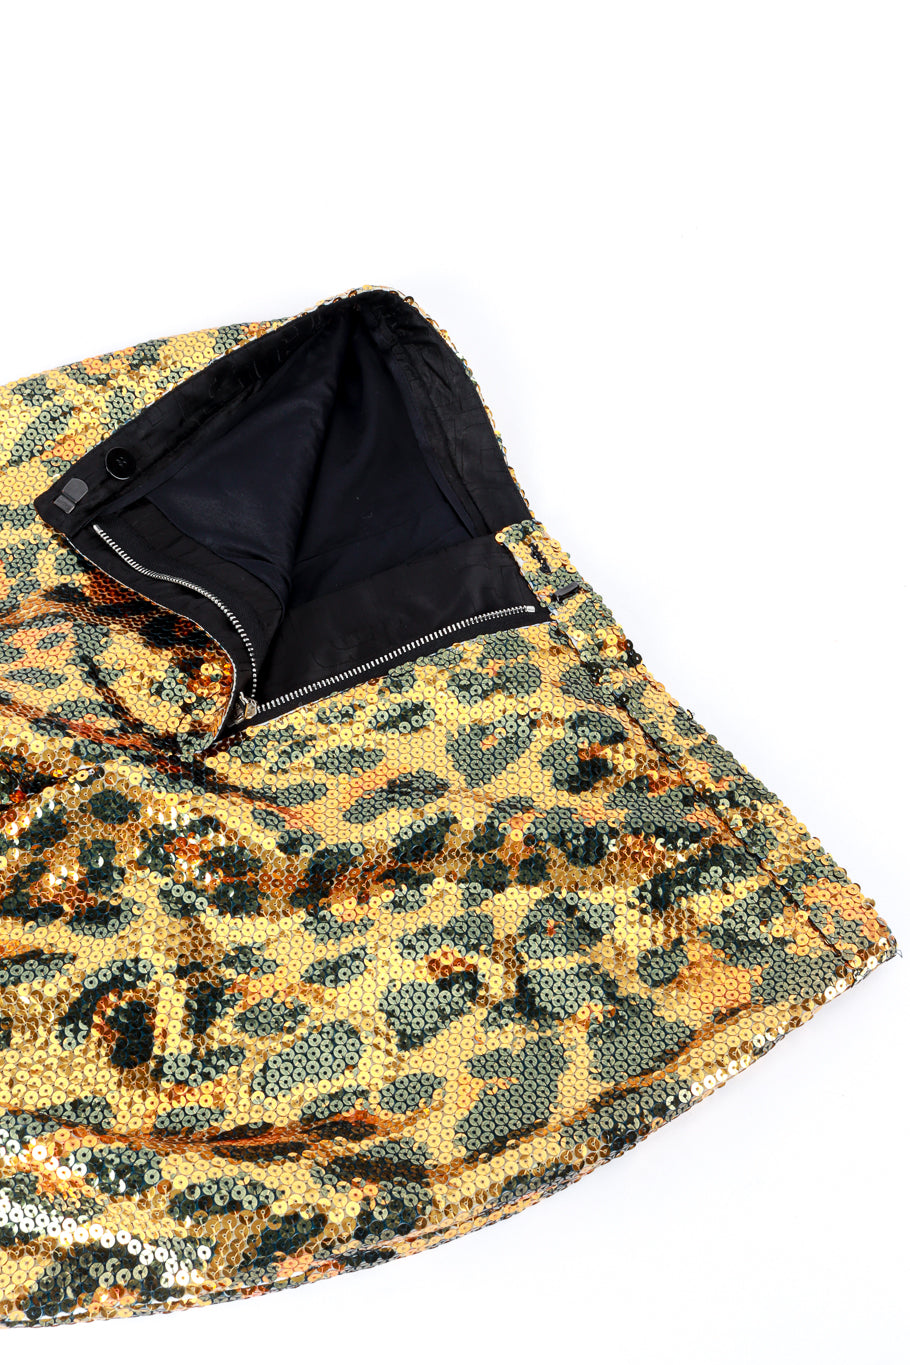 Paco Rabanne Sequin Leopard Pants closure detail @RECESS LA